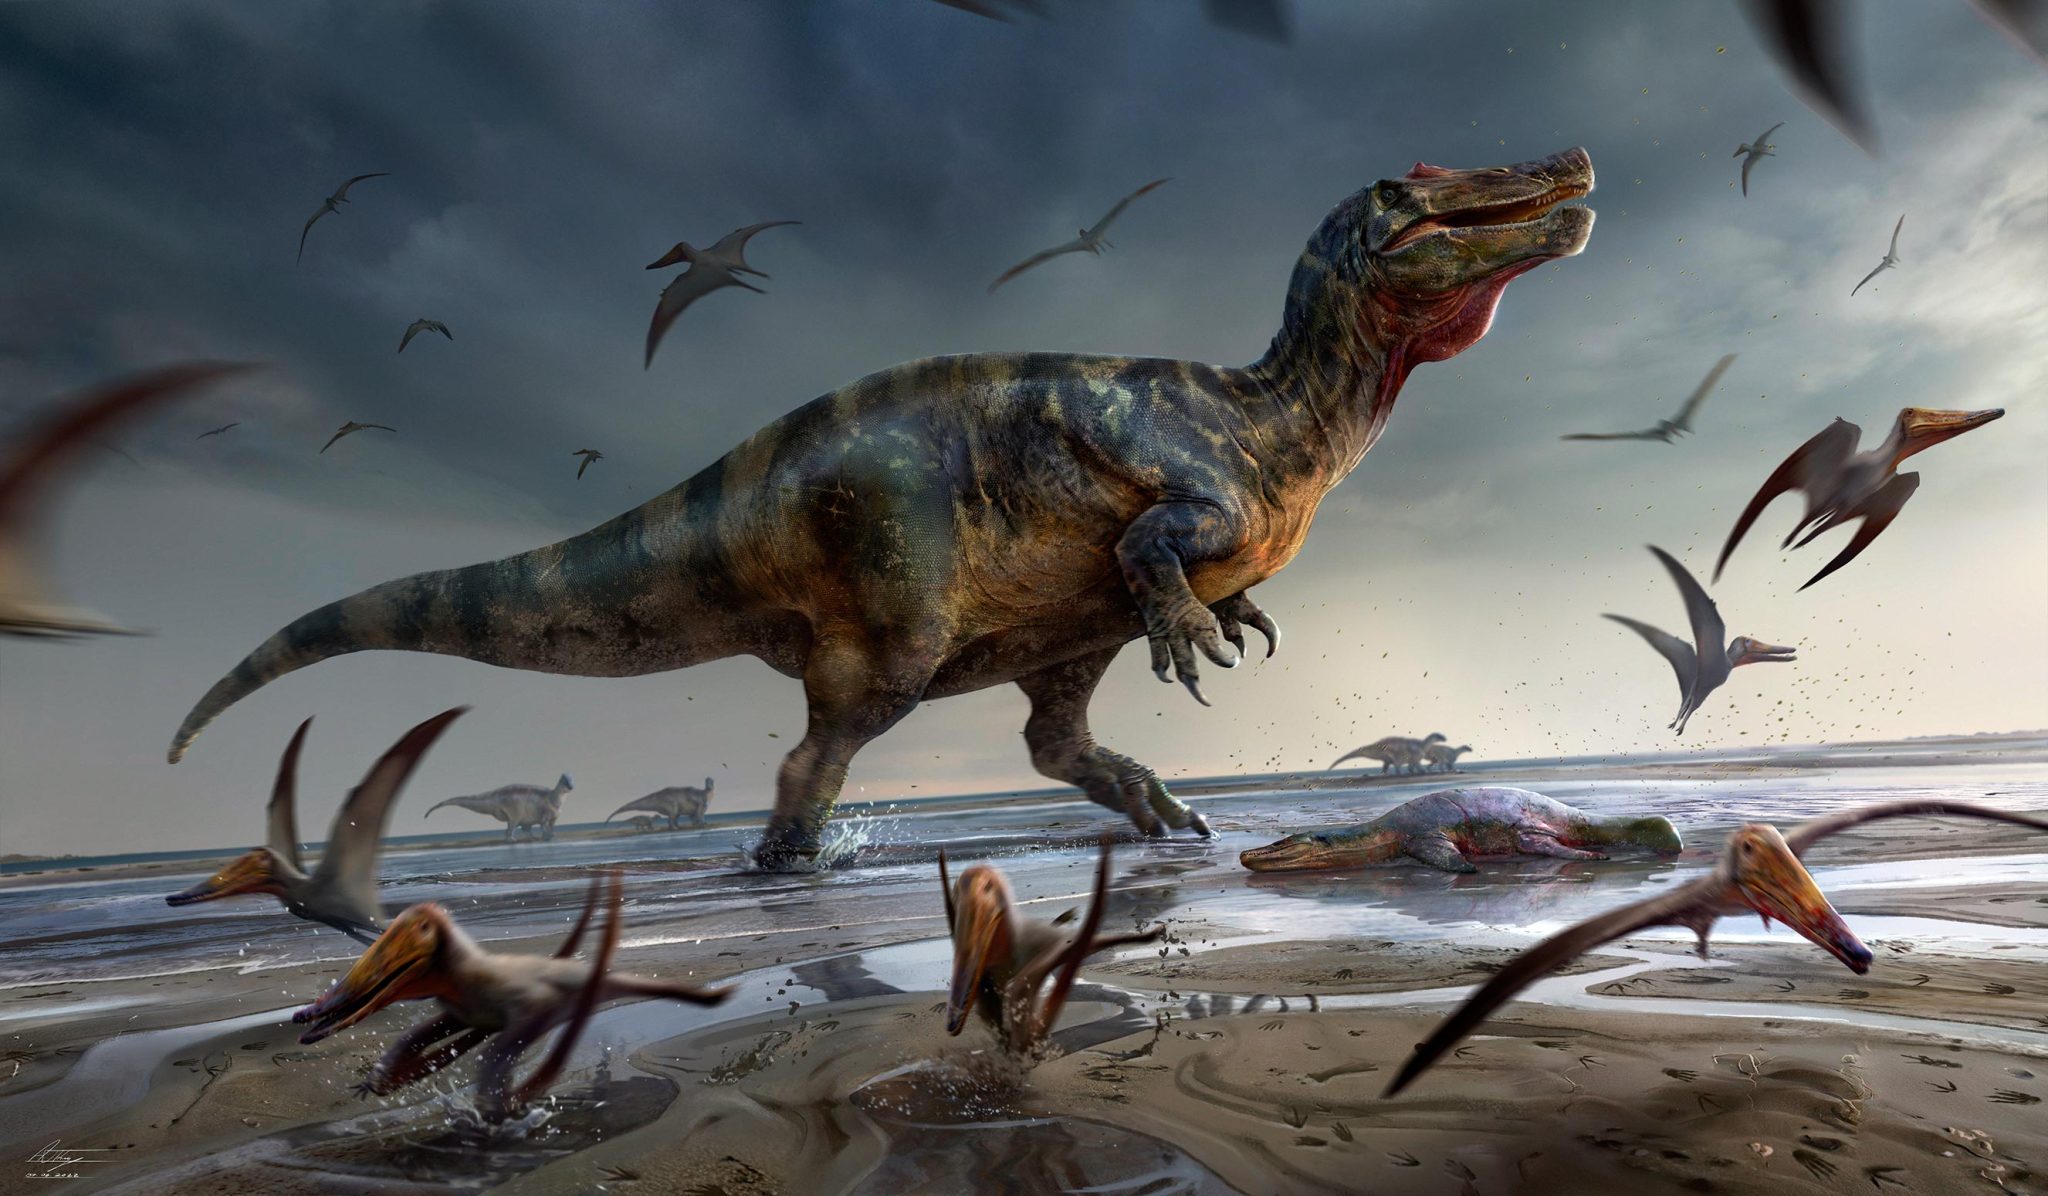 Ο μεγαλύτερος αρπακτικός δεινόσαυρος στην Ευρώπη ανακαλύφθηκε στο Isle of Wight